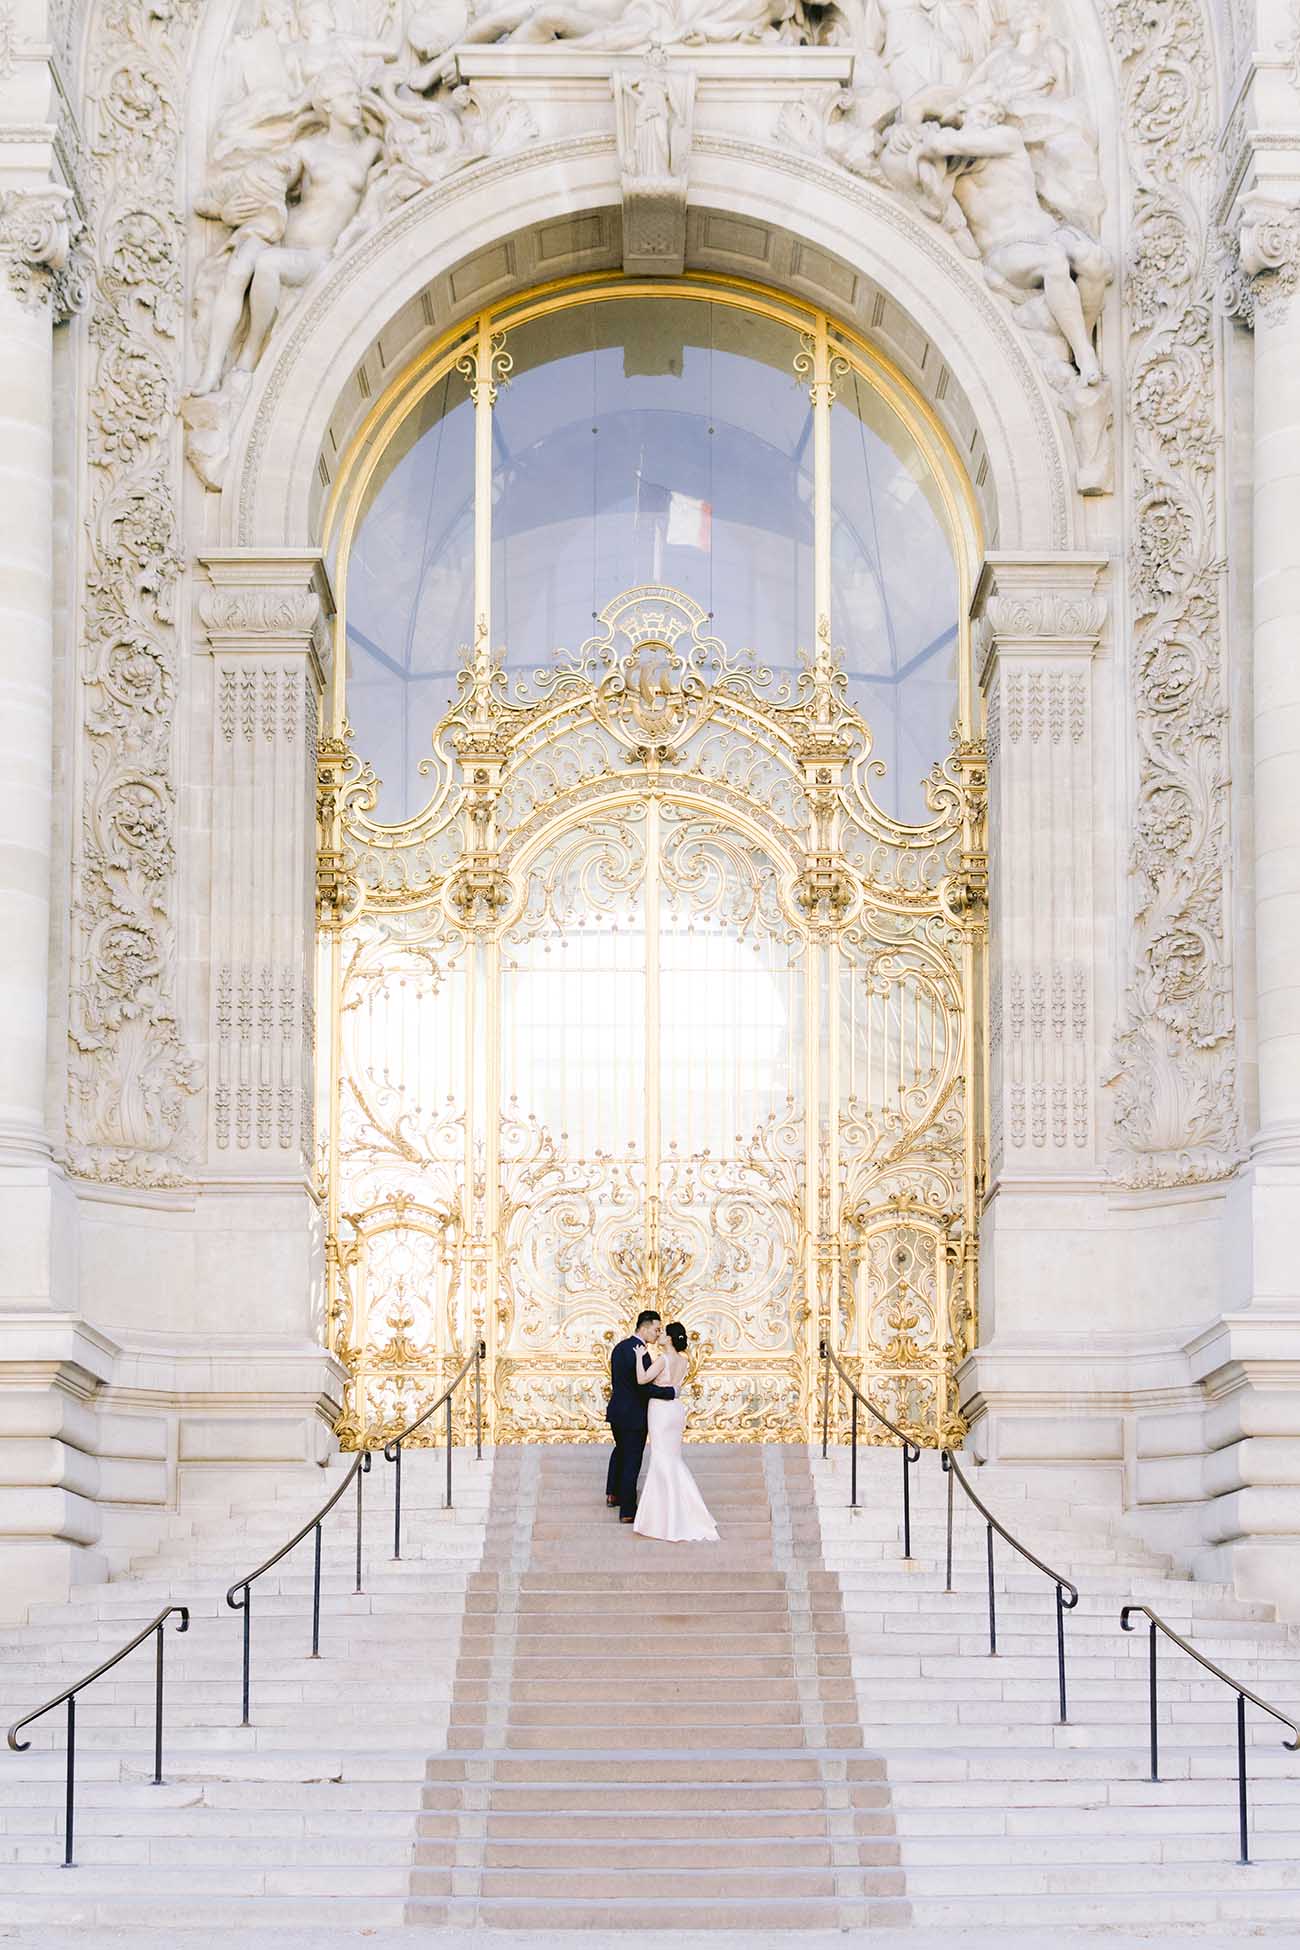 Ils s'embrassent devant la porte du grand palais à Paris